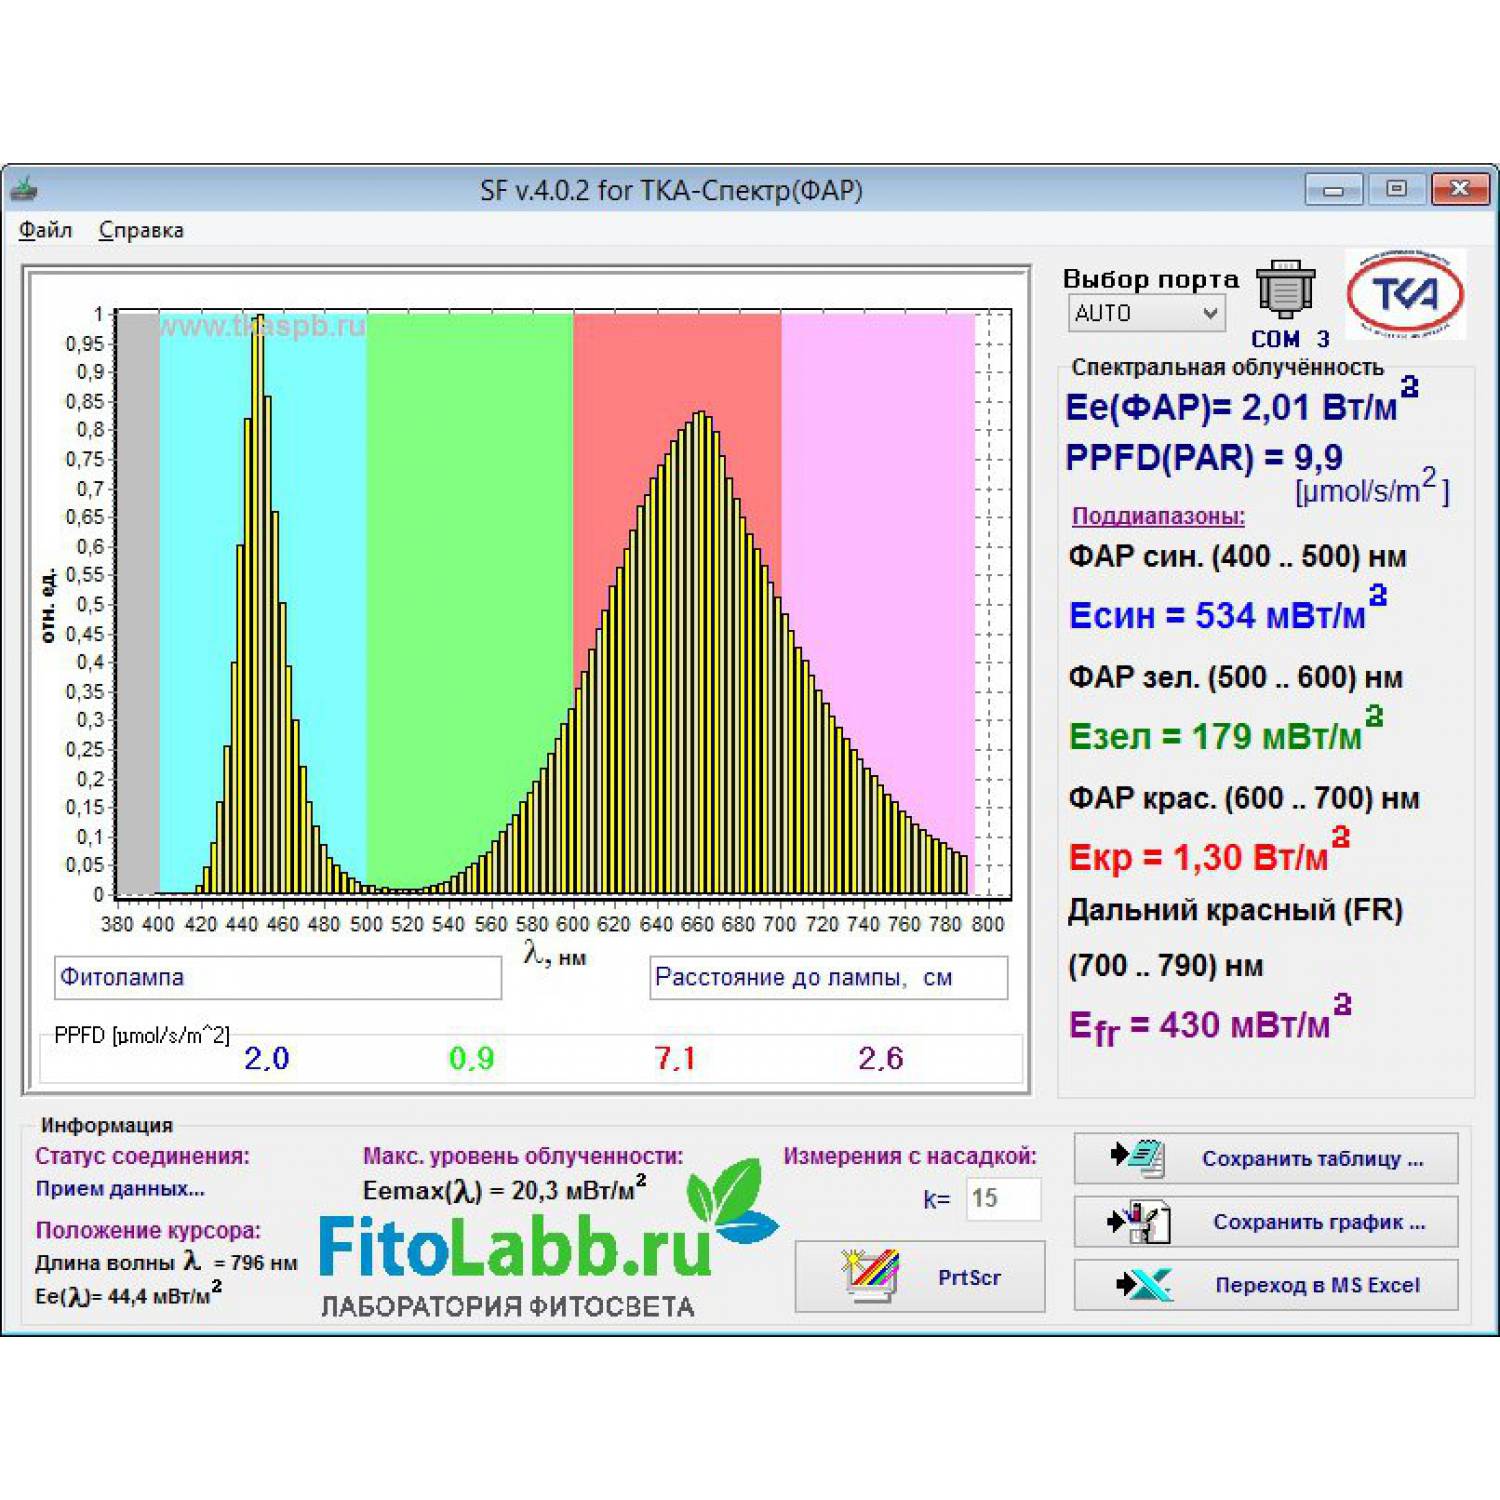 Фито светодиод 3 Вт полный спектр (full spectrum led) без платформы 400-800нм